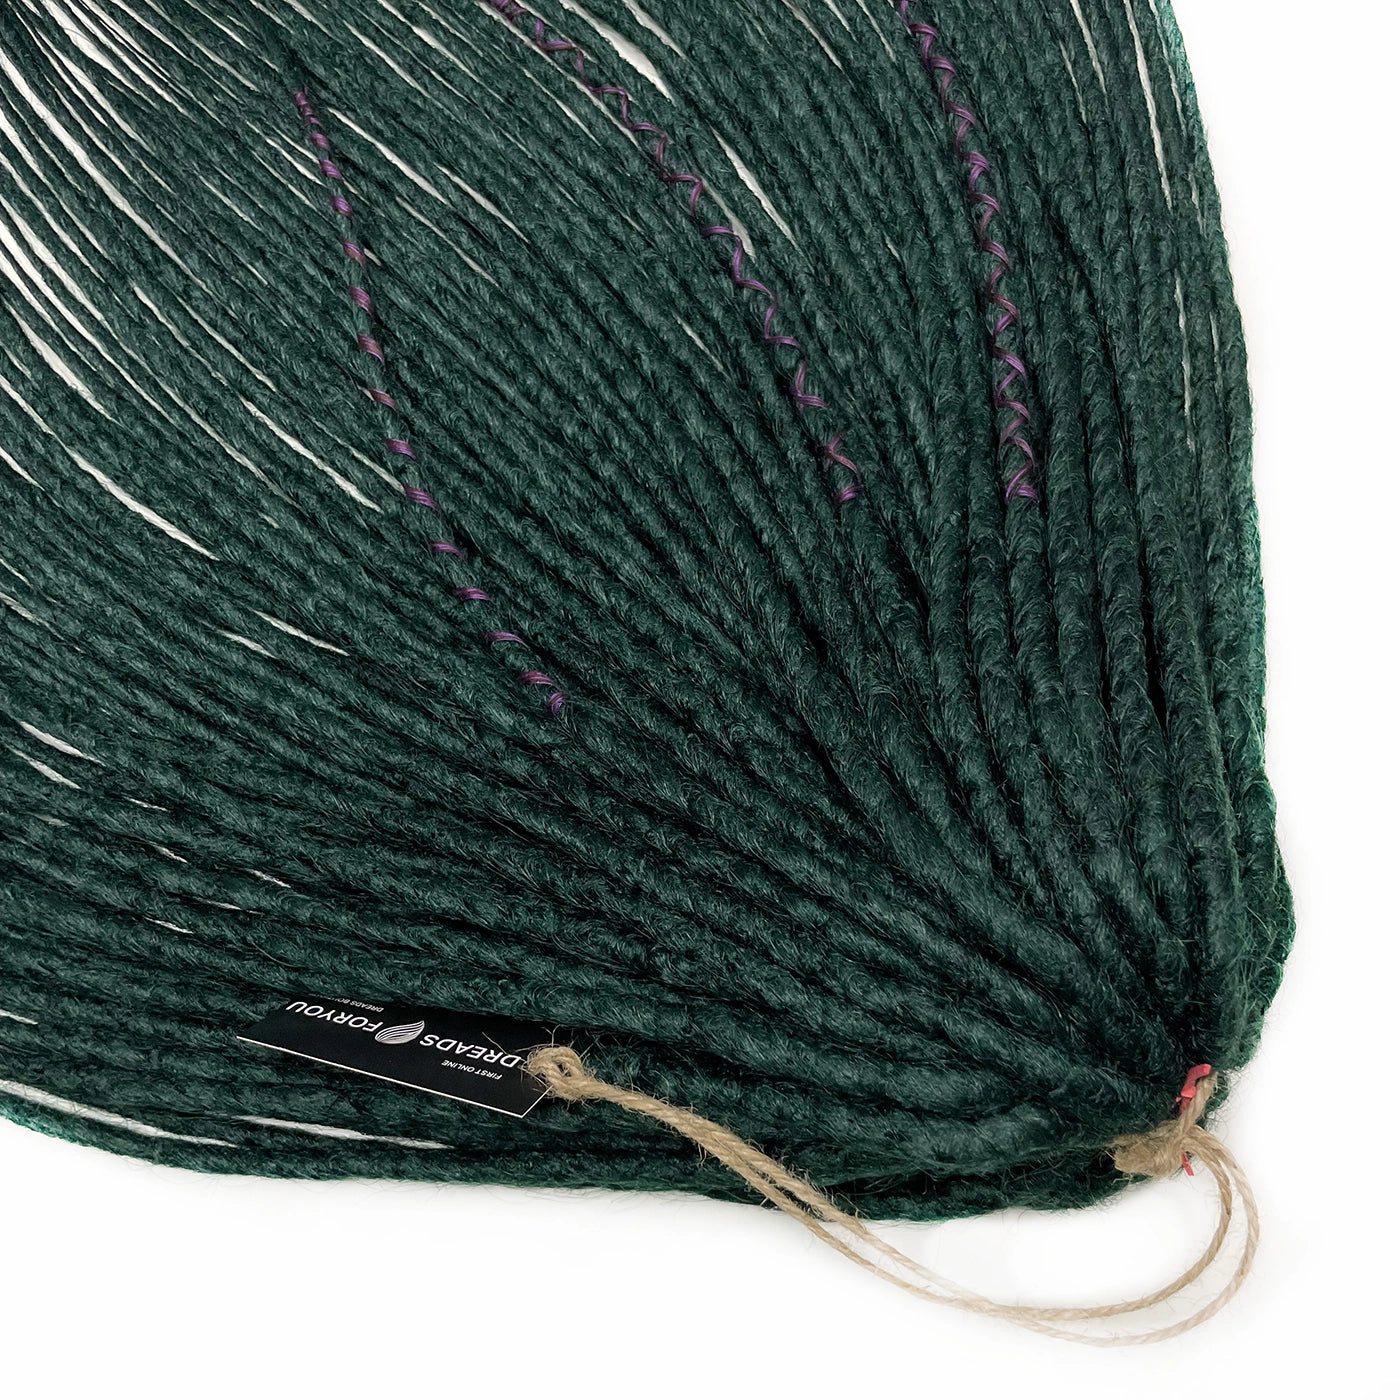 DE Crochet Emerald STOCK 60 cm